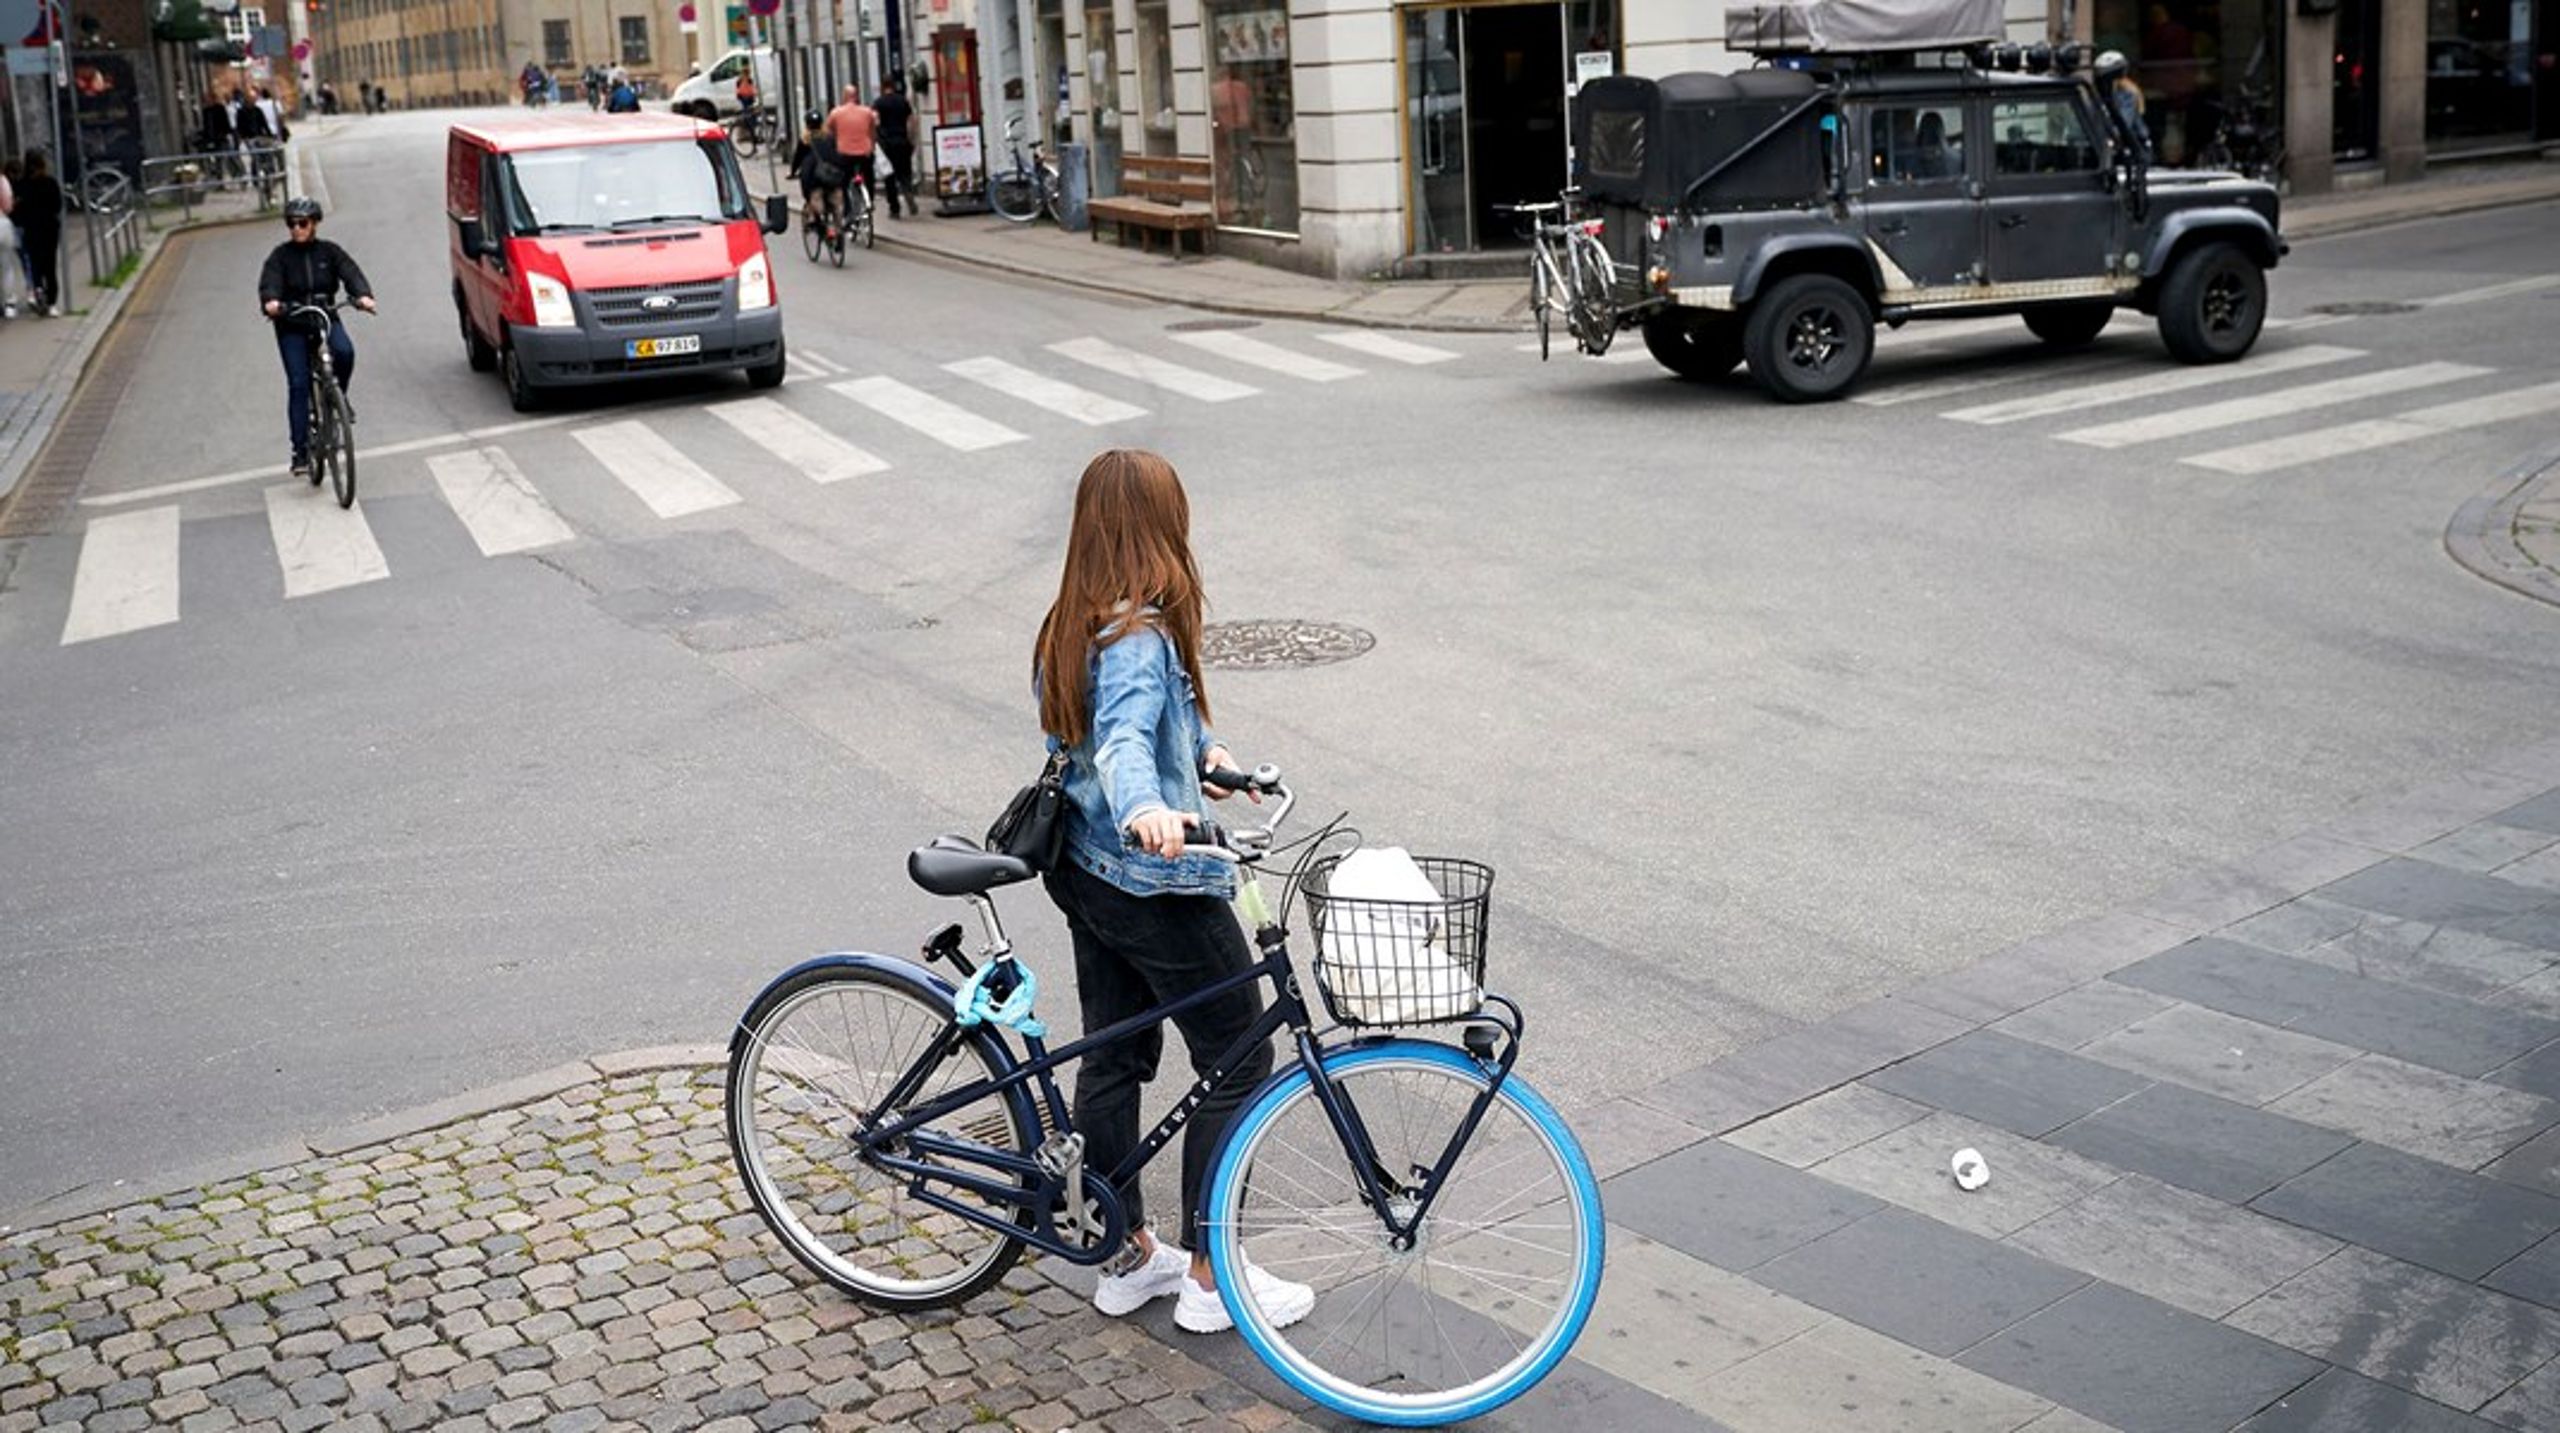 Københavns cykelpolitik bør opgraderes, så der anlægges flere cykelgader. Cyklister skal ikke frygte for deres liv, når de kører i København, skriver Katrine Kildgaard Nielsen.